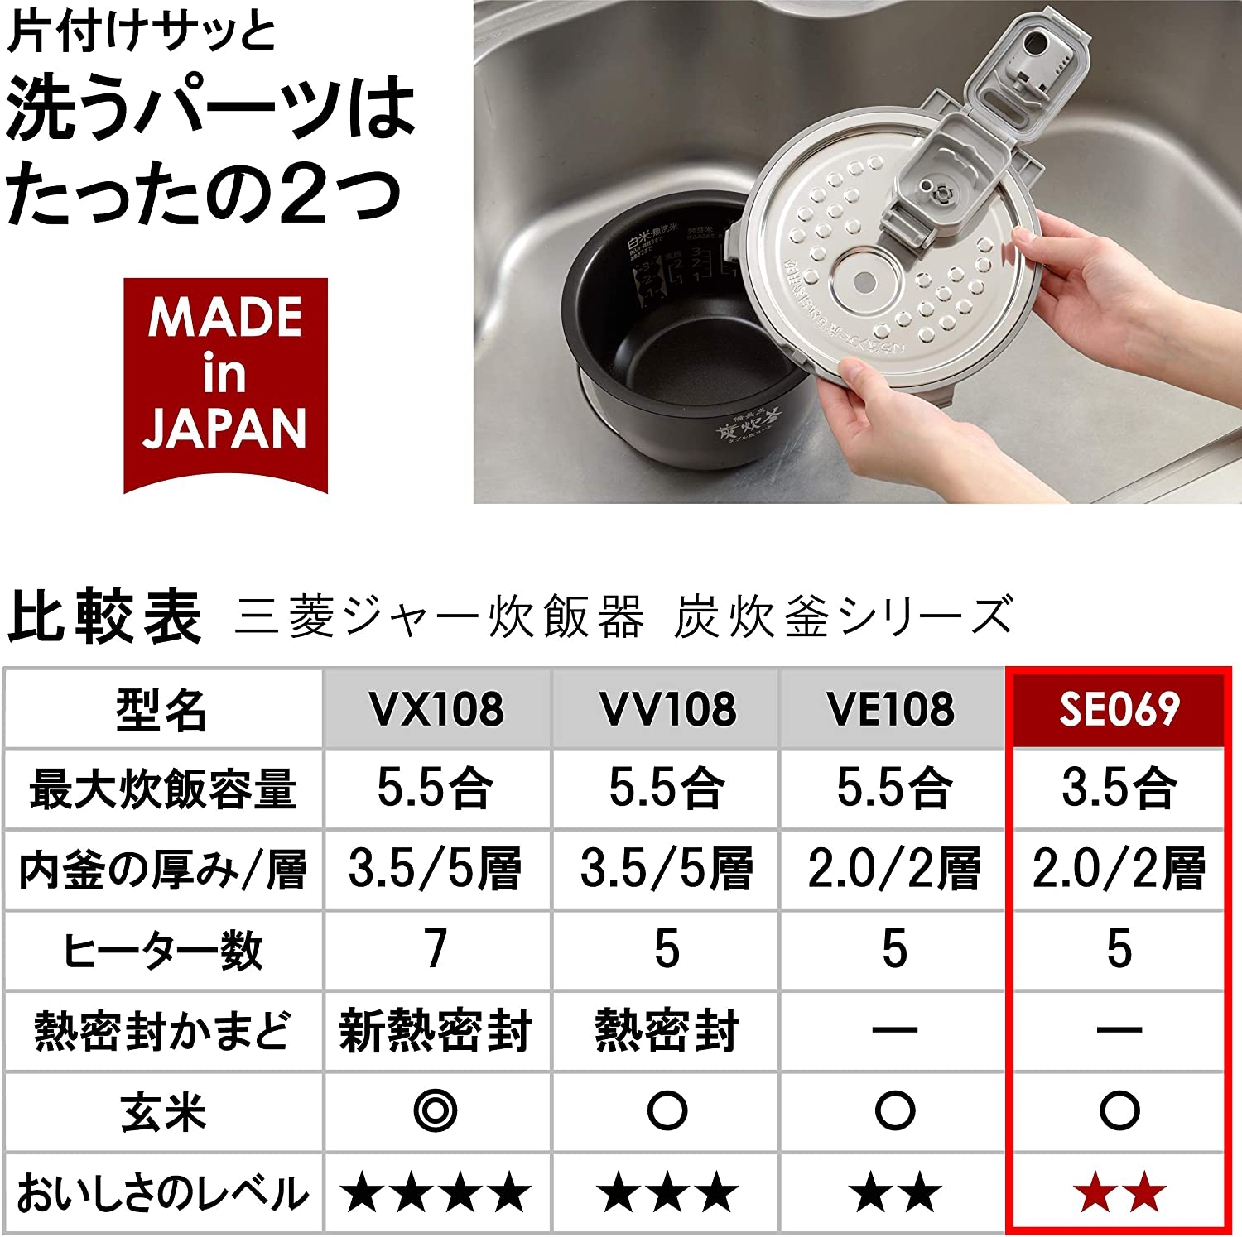 三菱電機(MITSUBISHI ELECTRIC) 備長炭炭炊釜 3.5合炊き NJ-SE069の商品画像サムネ7 